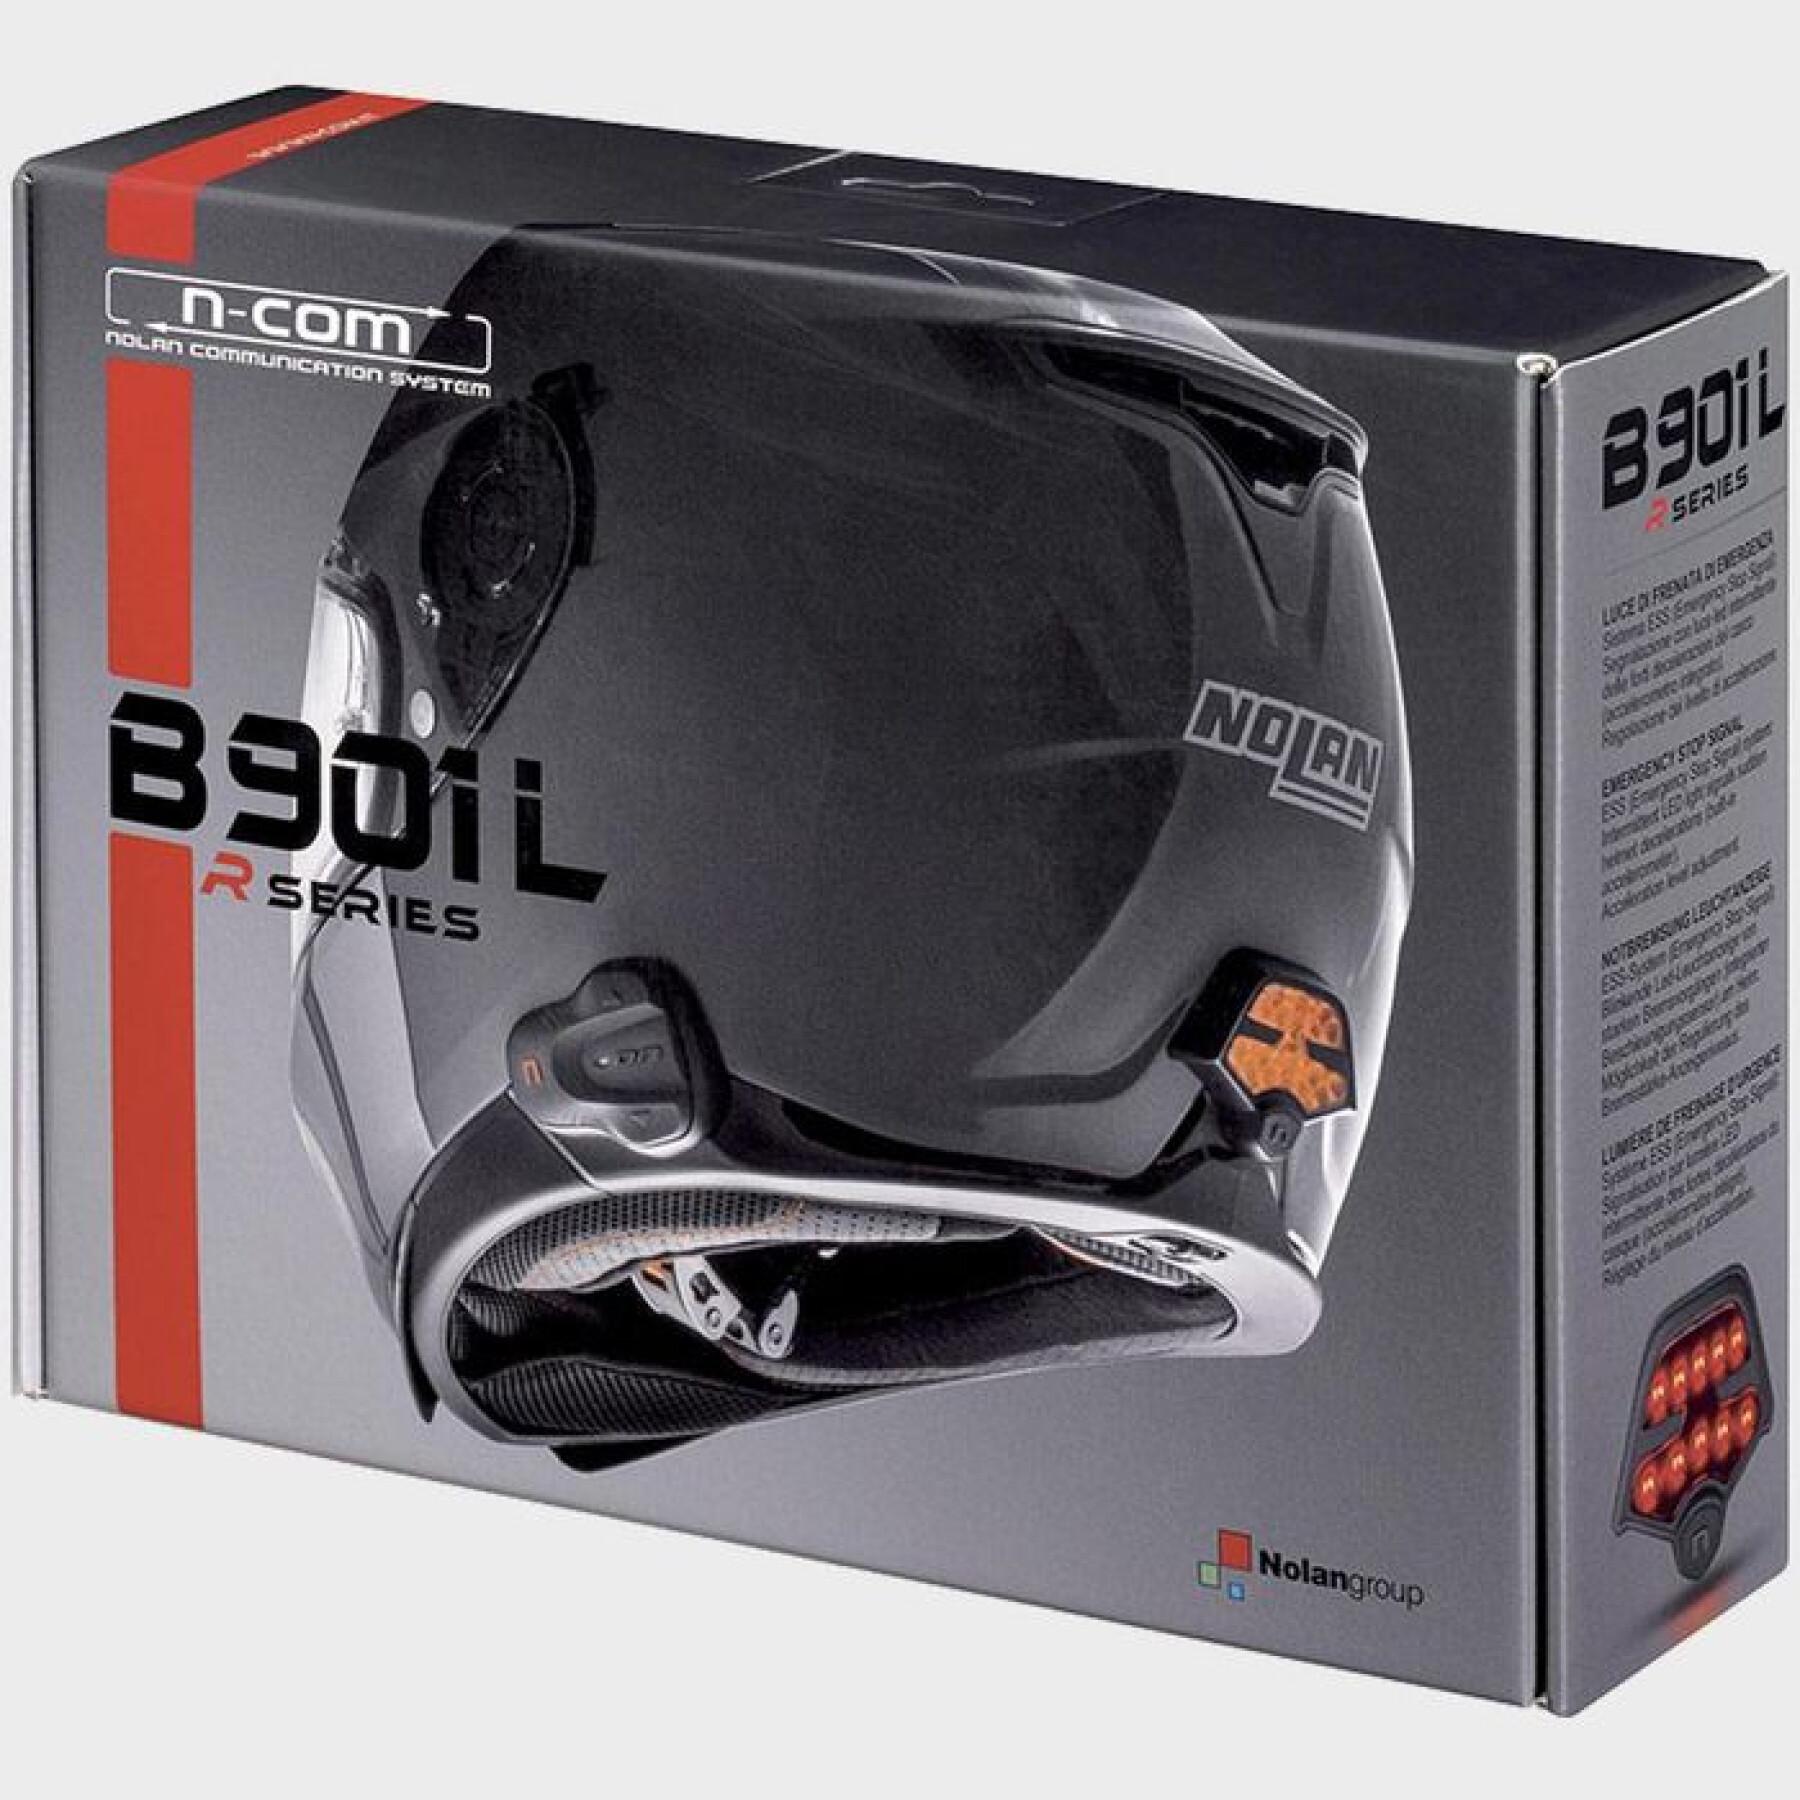 Intercom n-com b901l r series for headphones Nolan